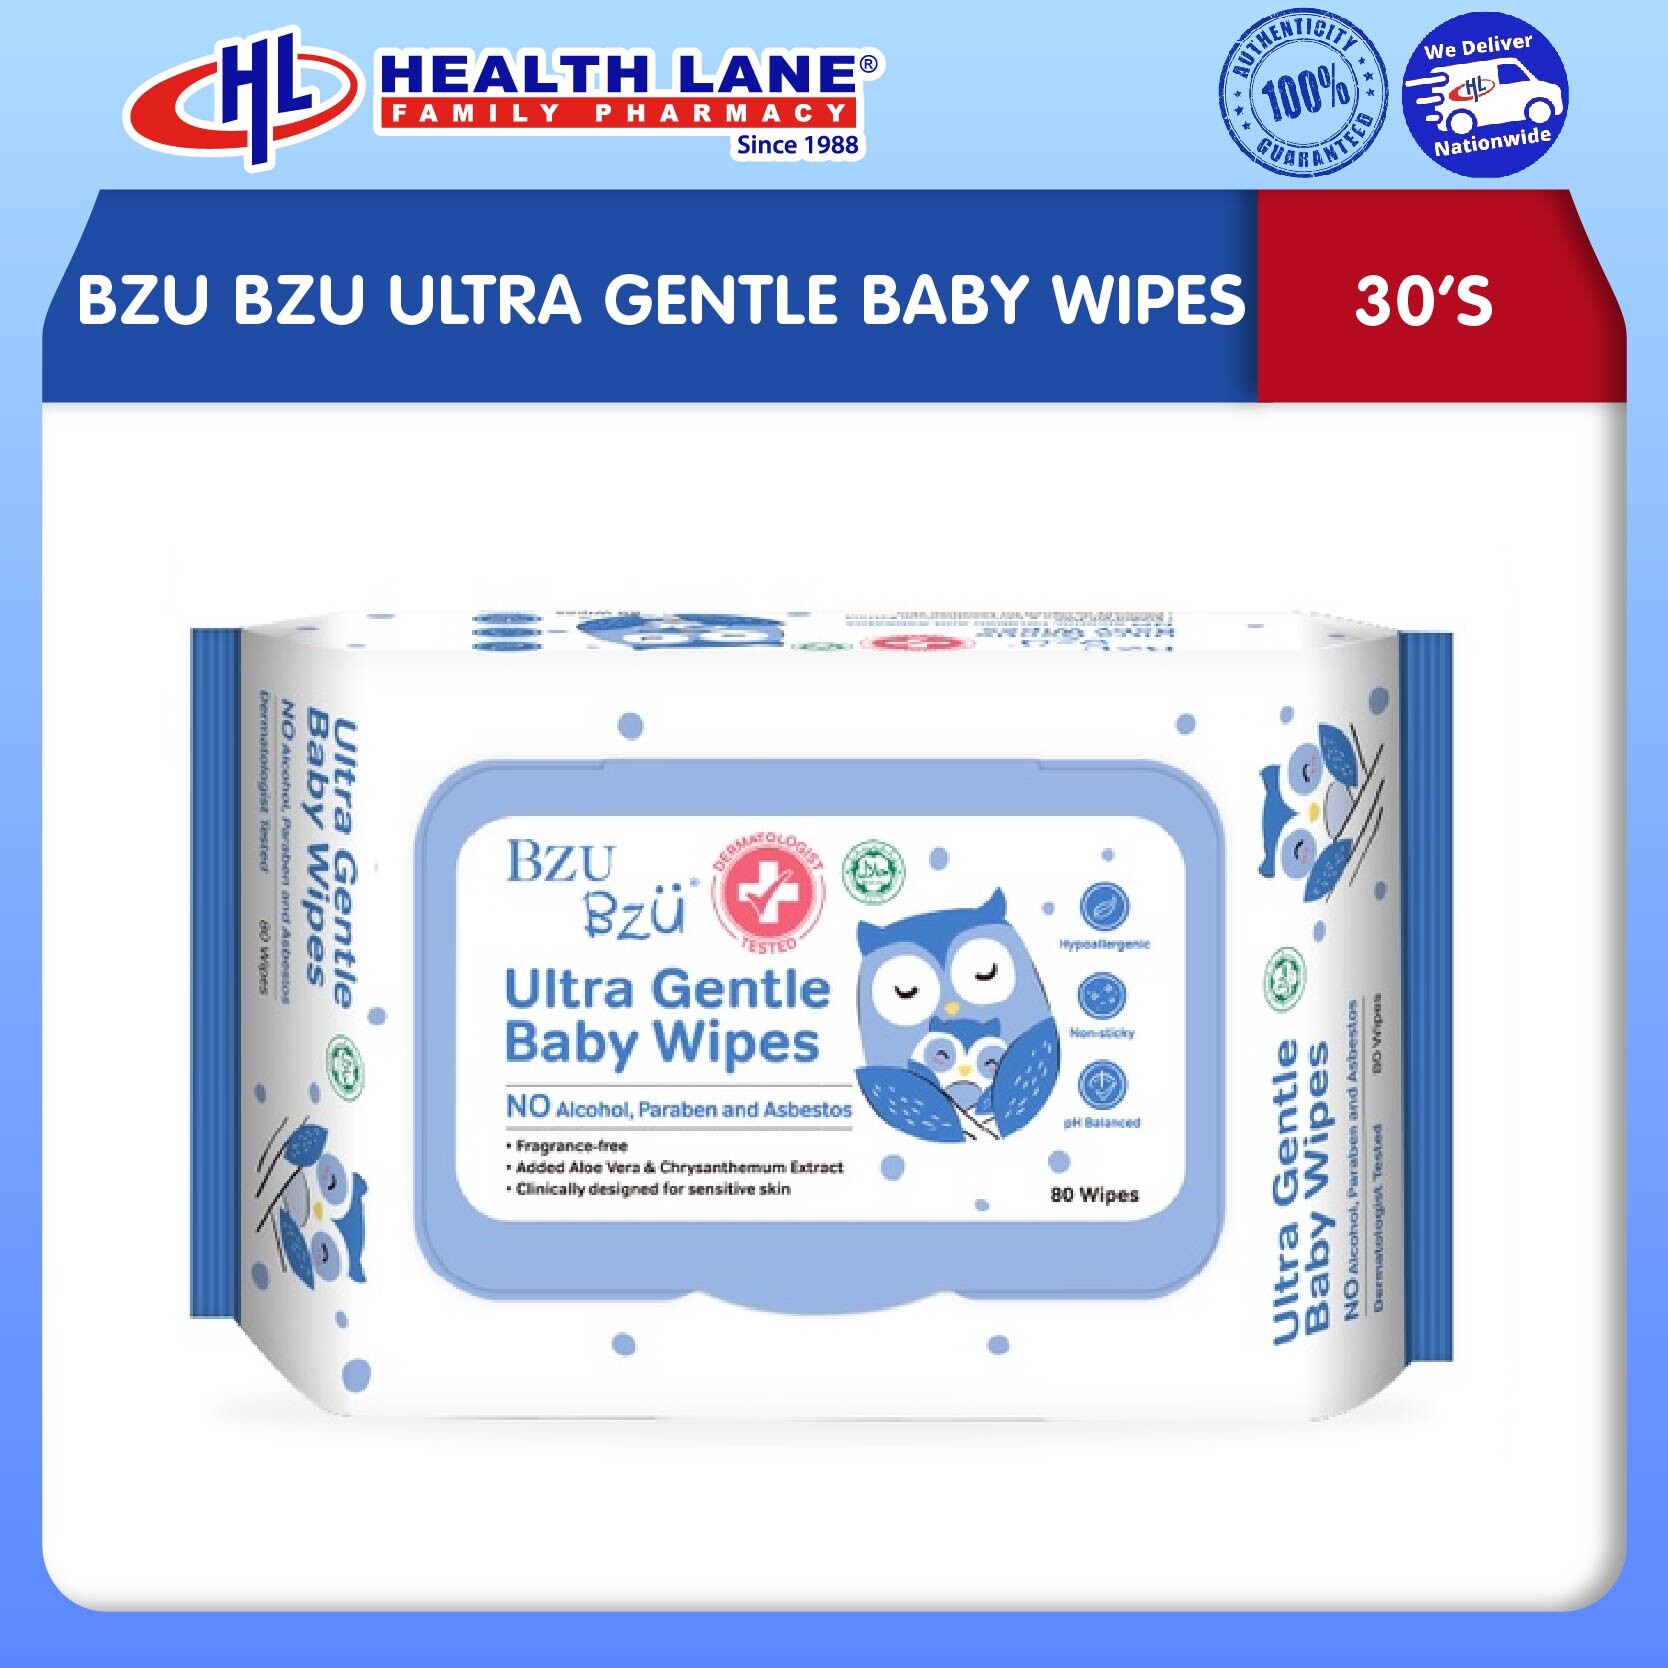 BZU BZU ULTRA GENTLE BABY WIPES (30'S)